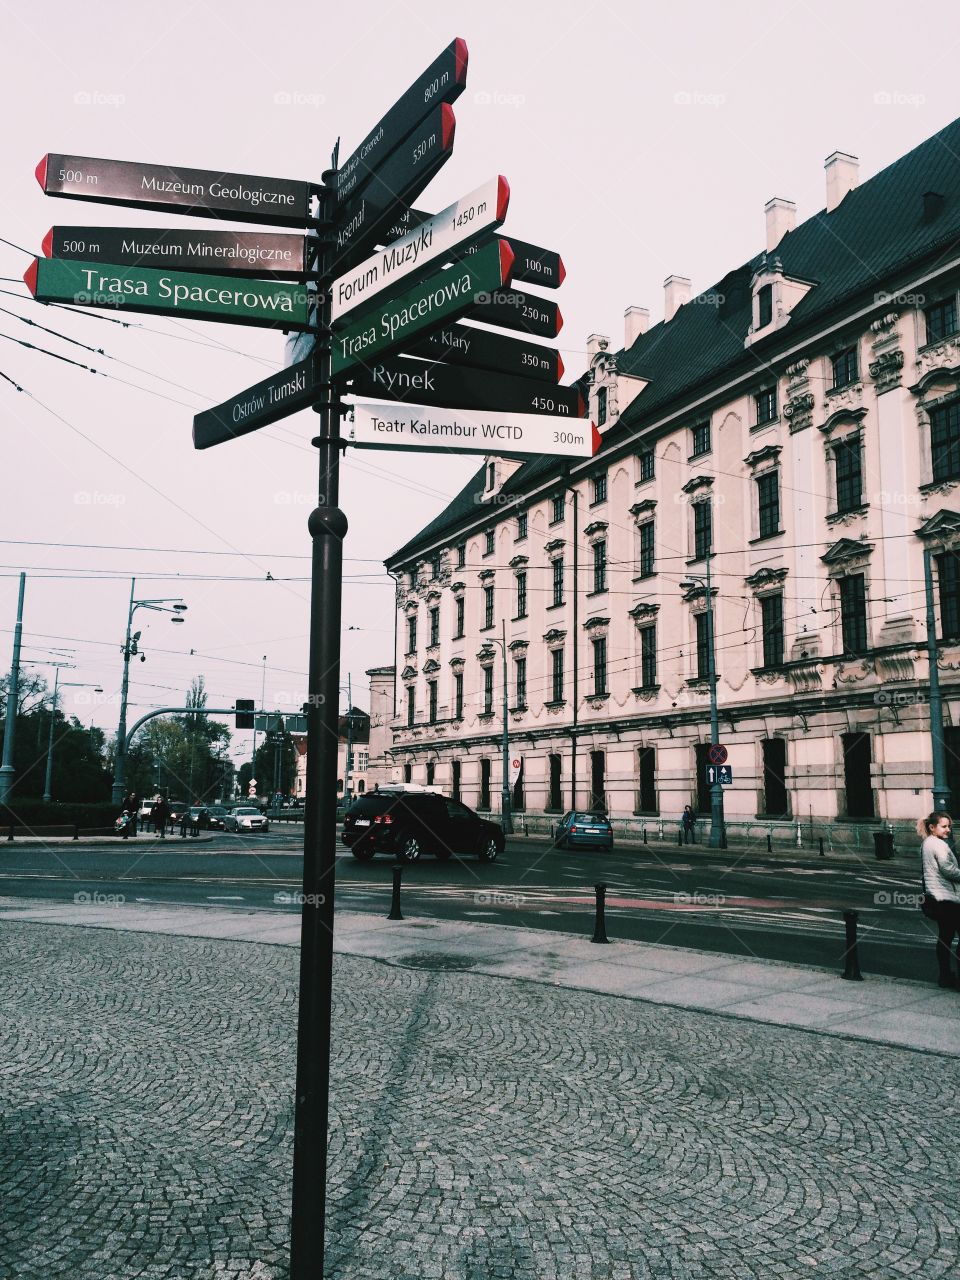 Wrocław city